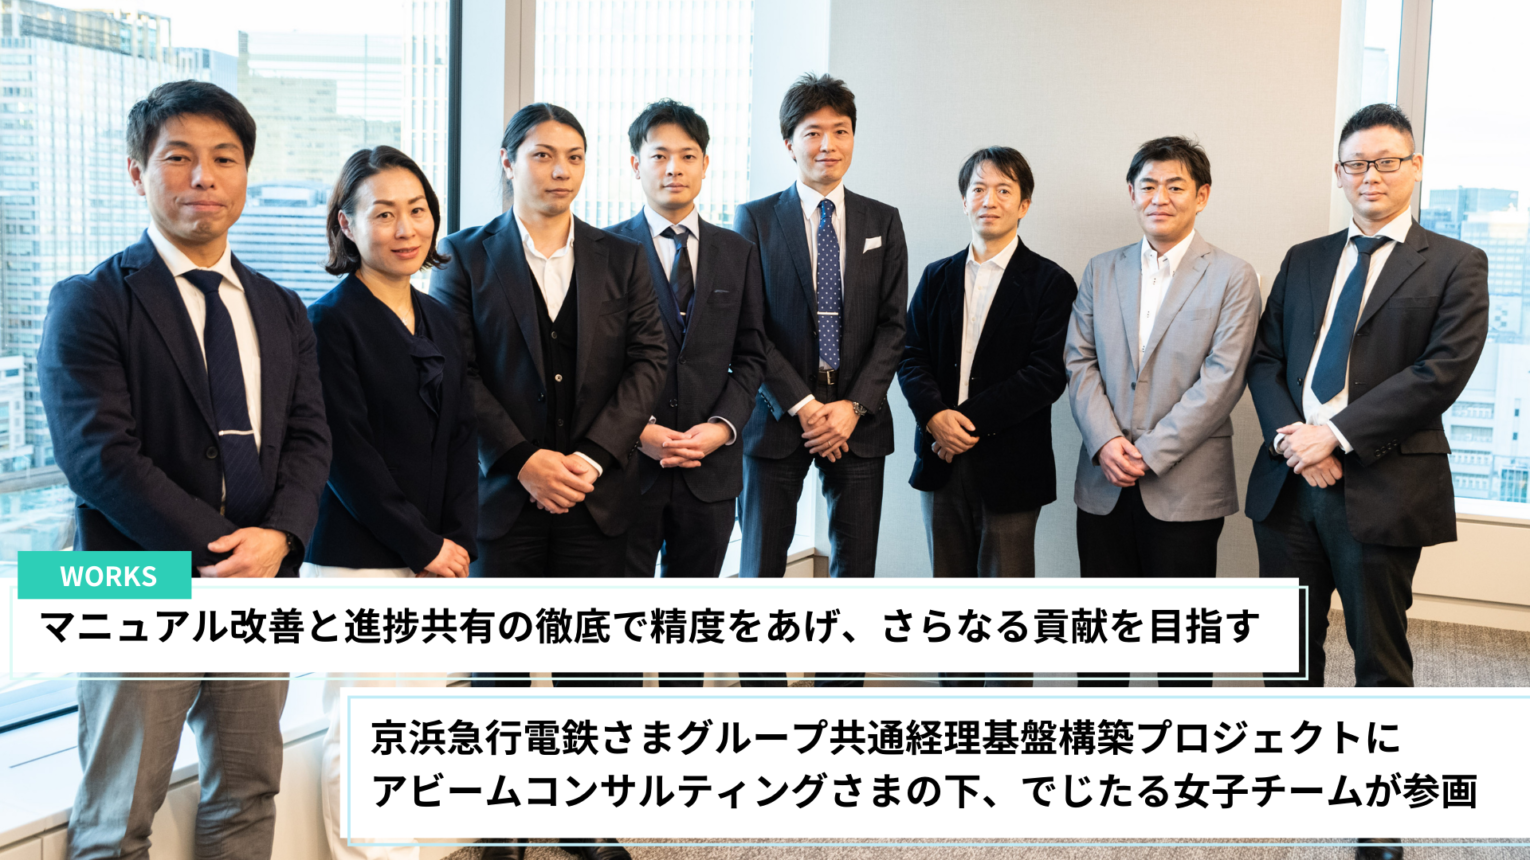 京浜急行電鉄さまグループ共通経理基盤構築プロジェクトにアビーム ...